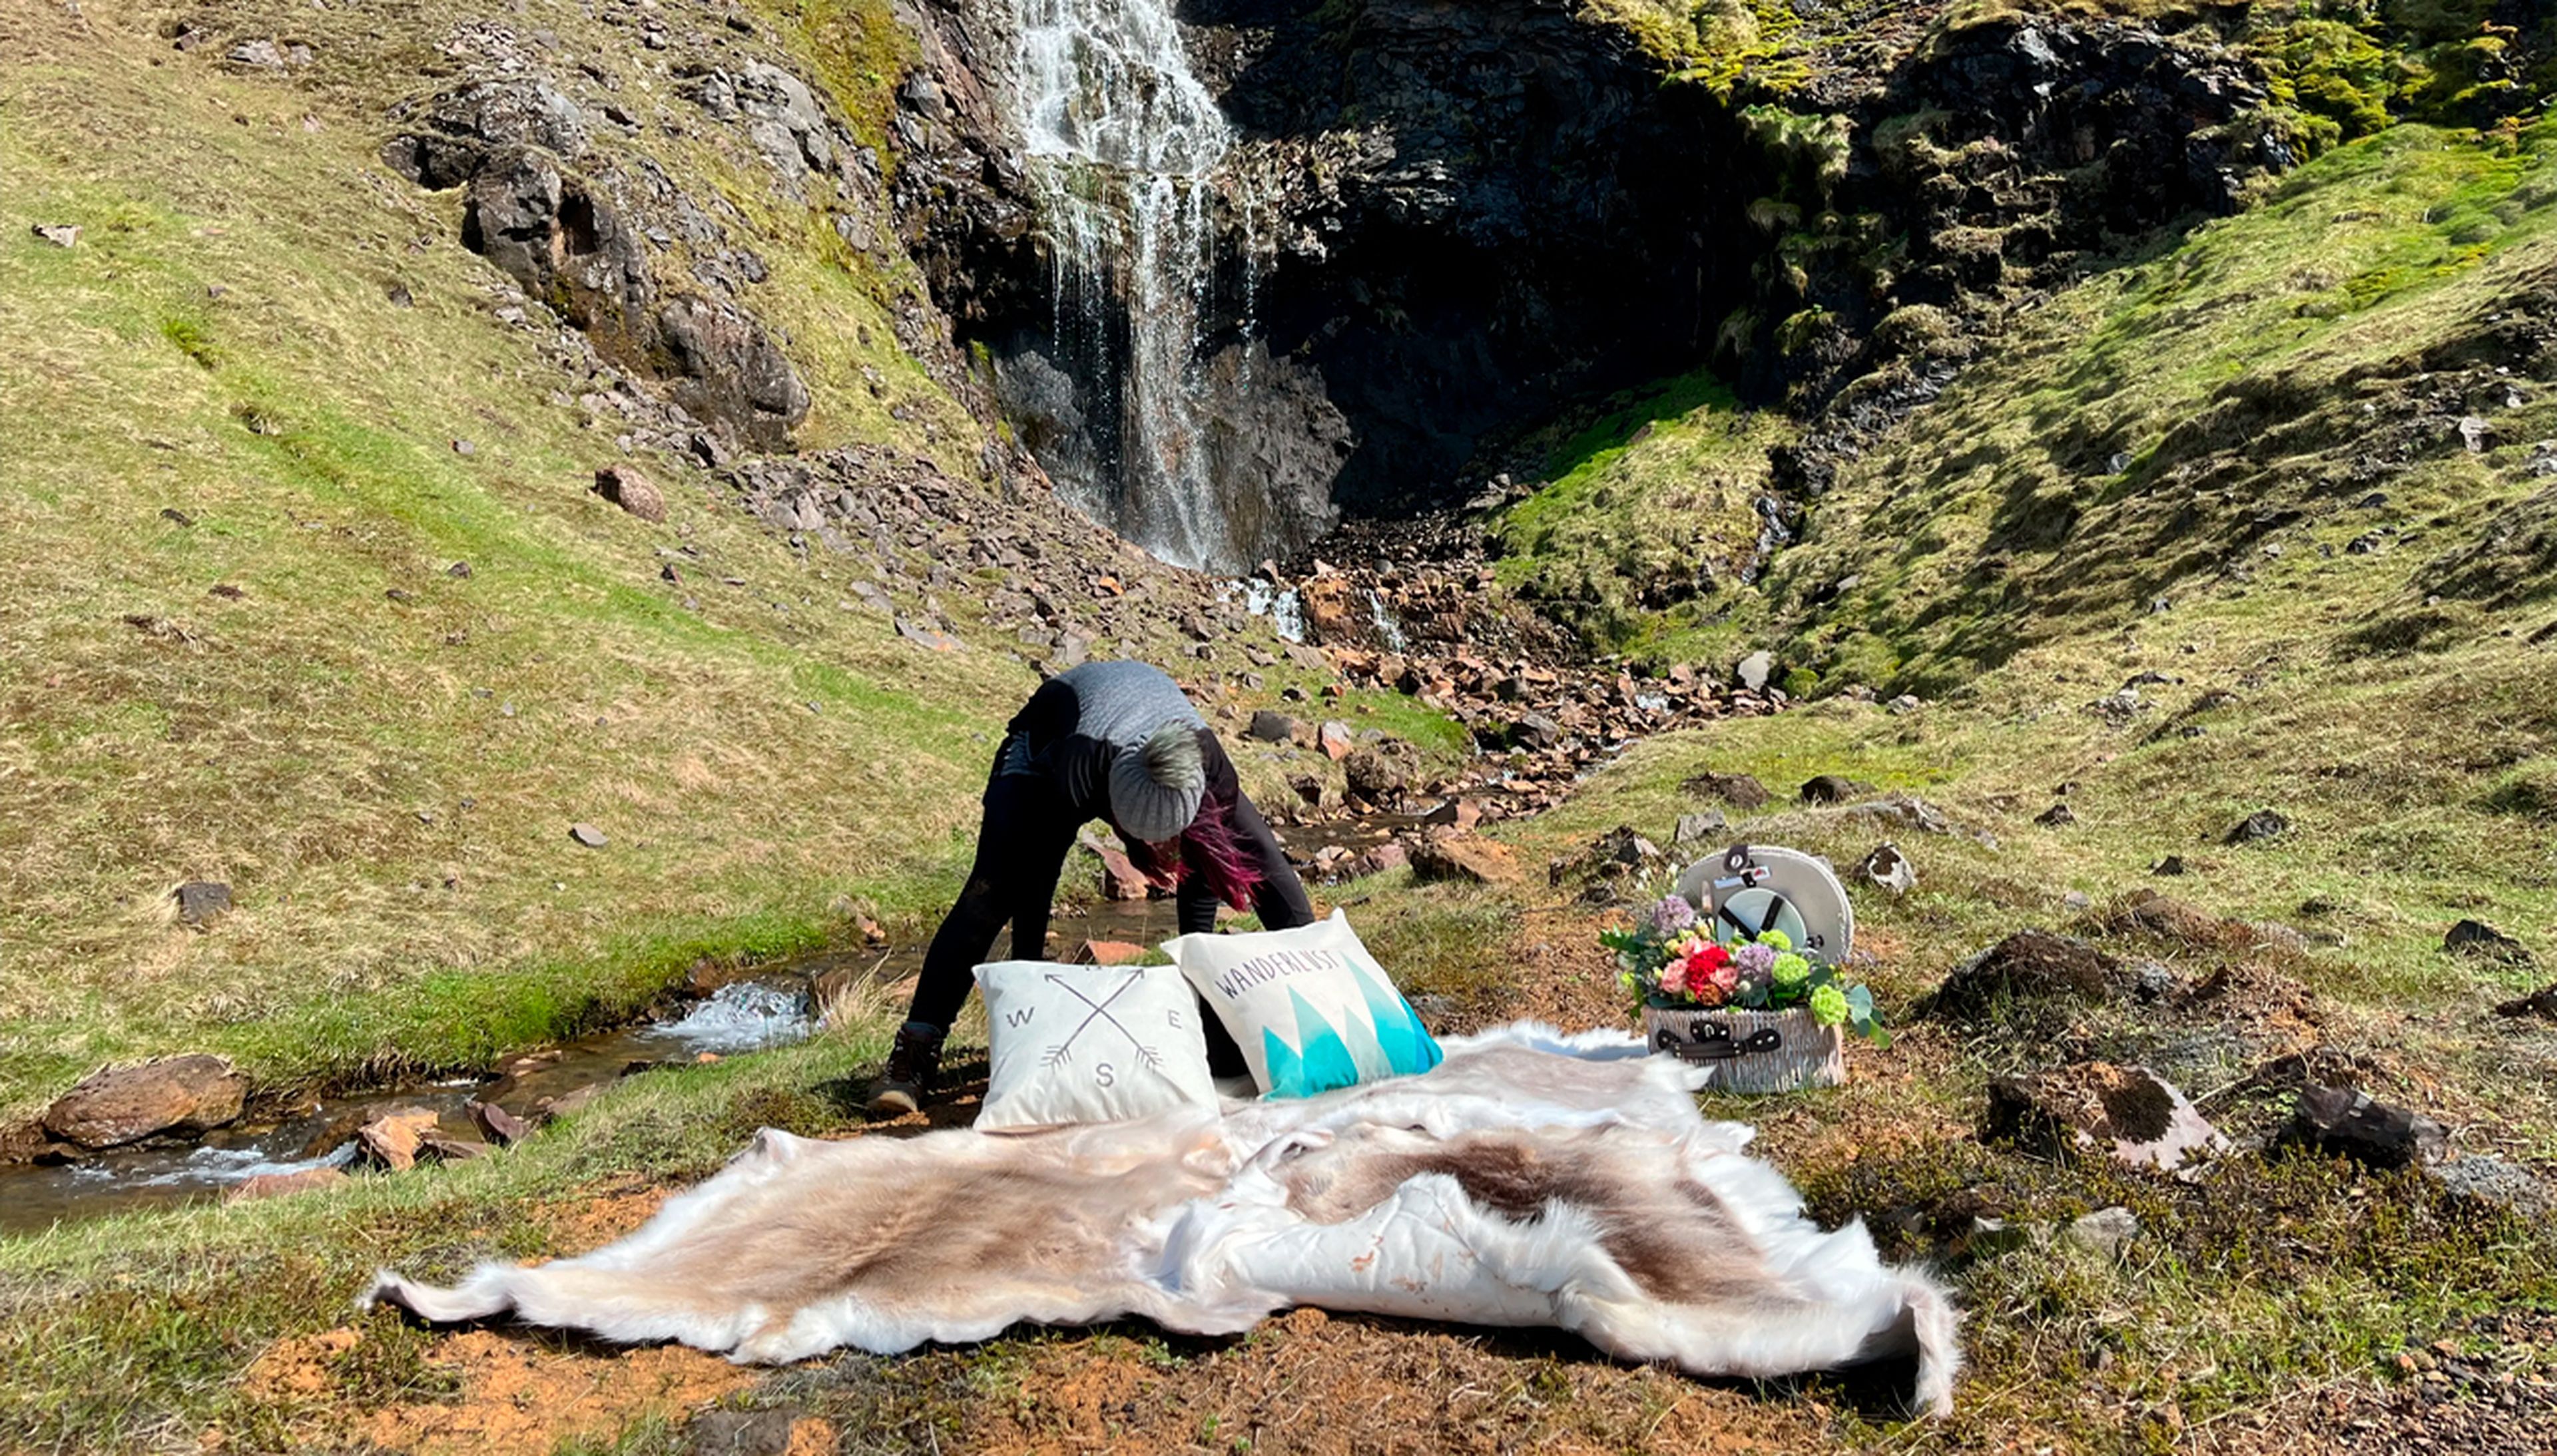 Peters prepara un picnic al pie de una cascada privada.